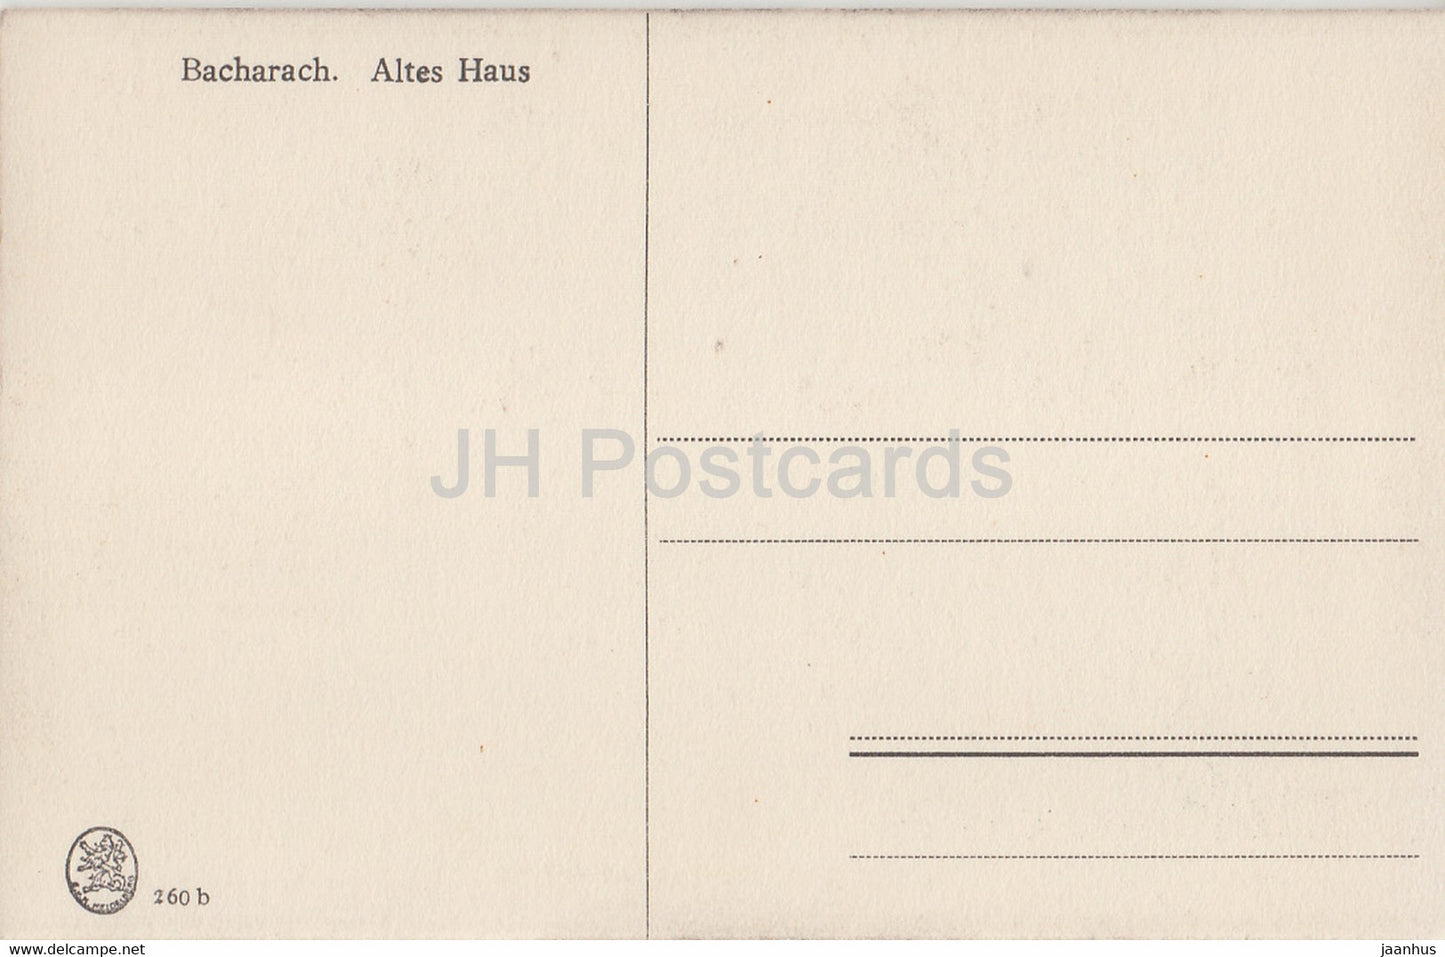 Bacharach - Altes Haus - alte Postkarte - Deutschland - unbenutzt